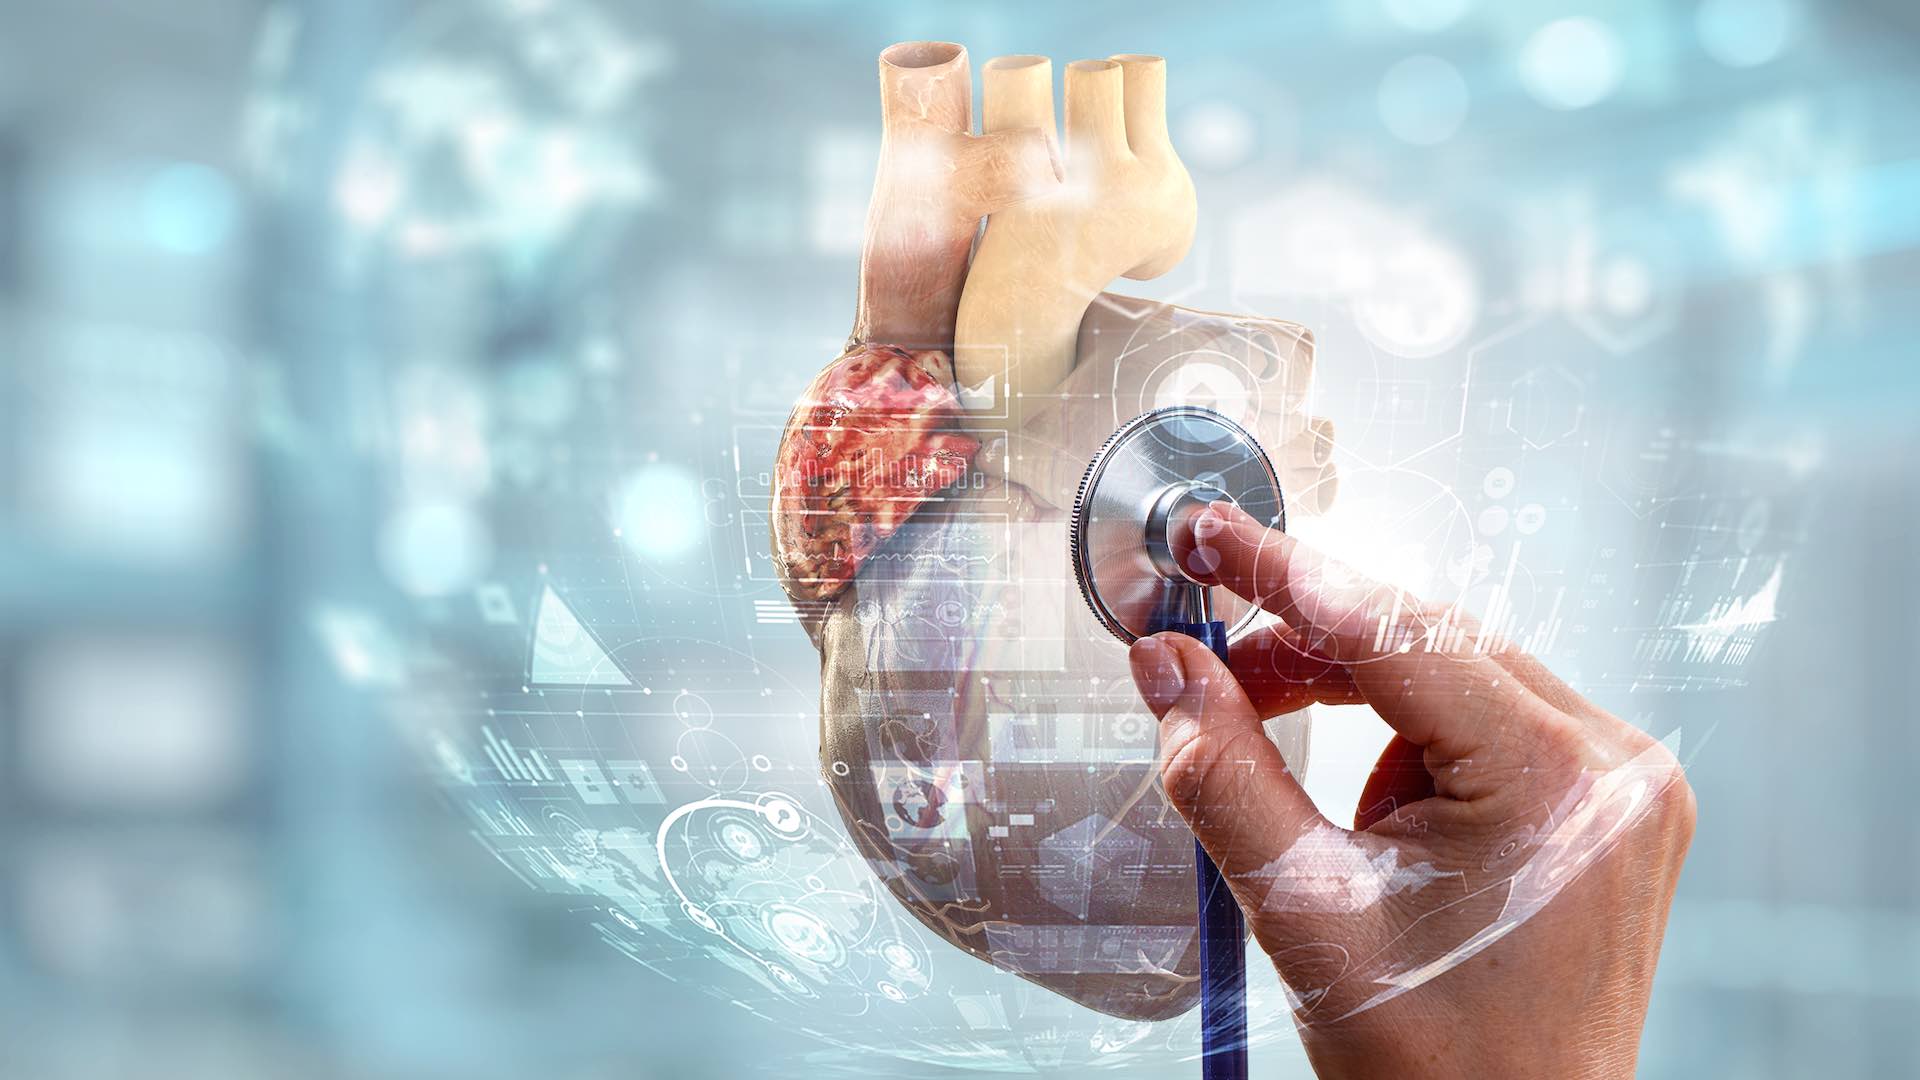 ผู้เชี่ยวชาญสรุปกลยุทธ์สำคัญในการต่อสู้กับการแพร่ระบาดของอาการหัวใจวาย